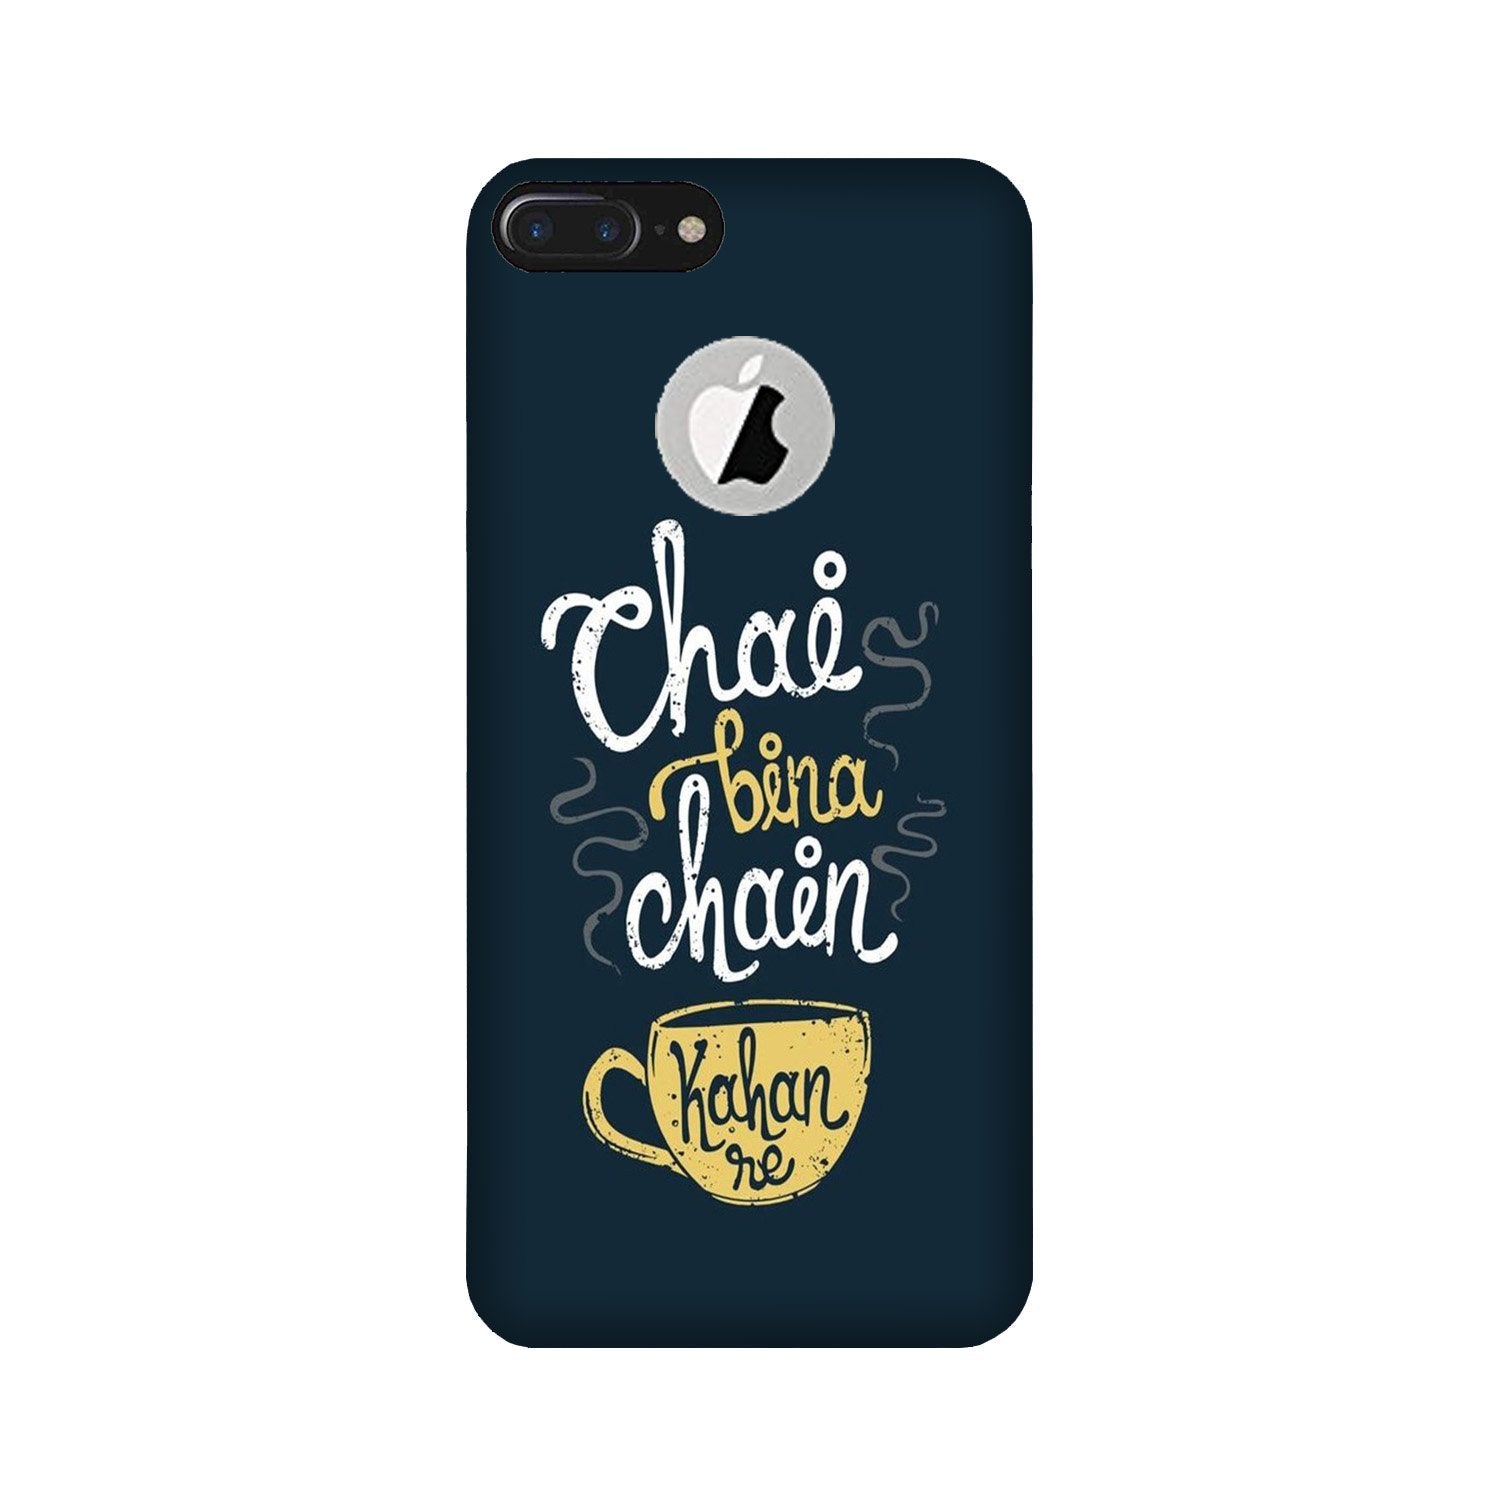 Chai Bina Chain Kahan Case for iPhone 7 Plus logo cut(Design - 144)